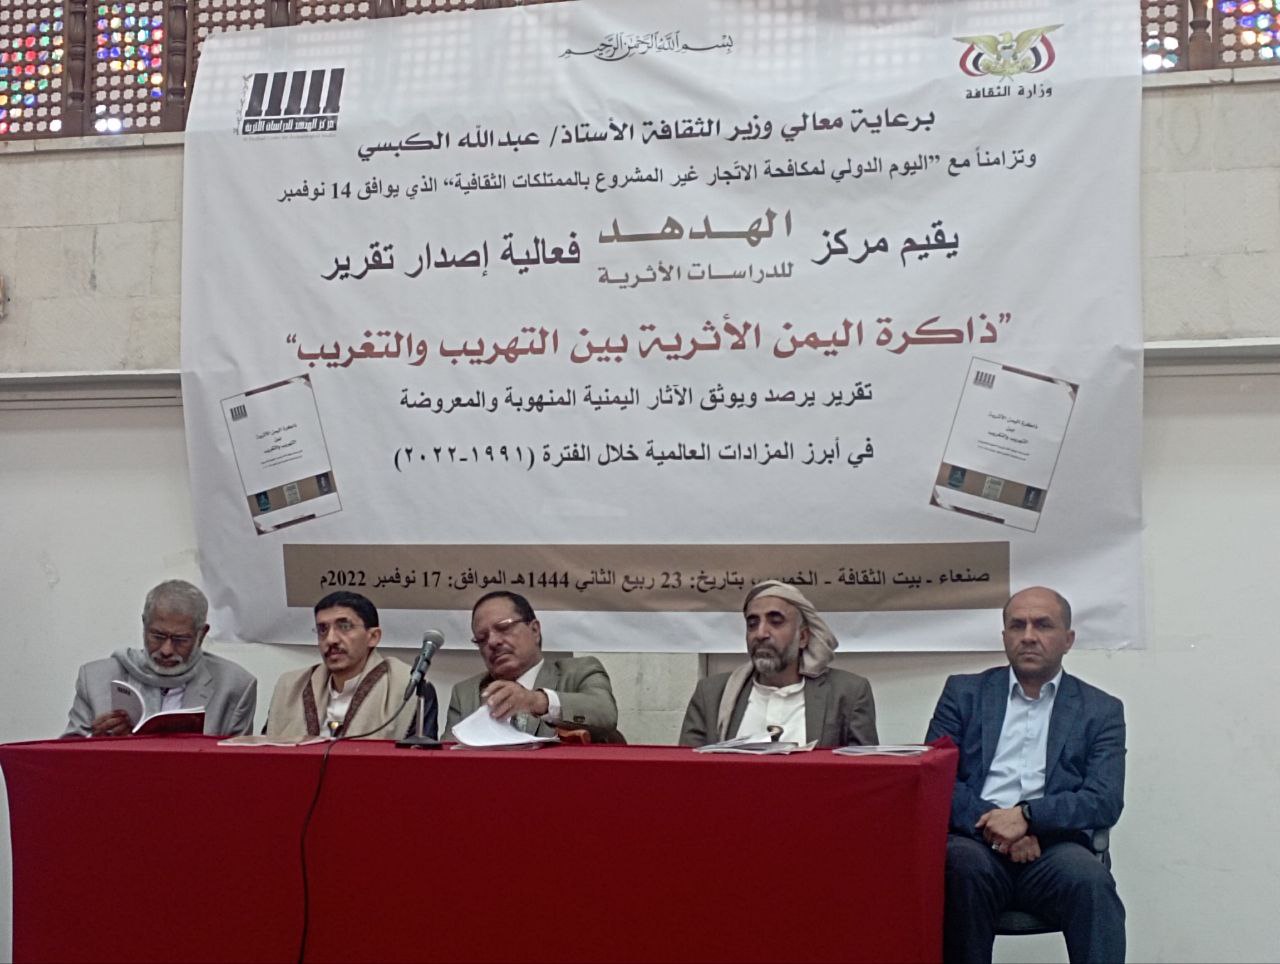 مركز الهدهد للدراسات الأثرية يصدر تقرير” ذاكرة اليمن الأثرية بين التهريب والتغريب”